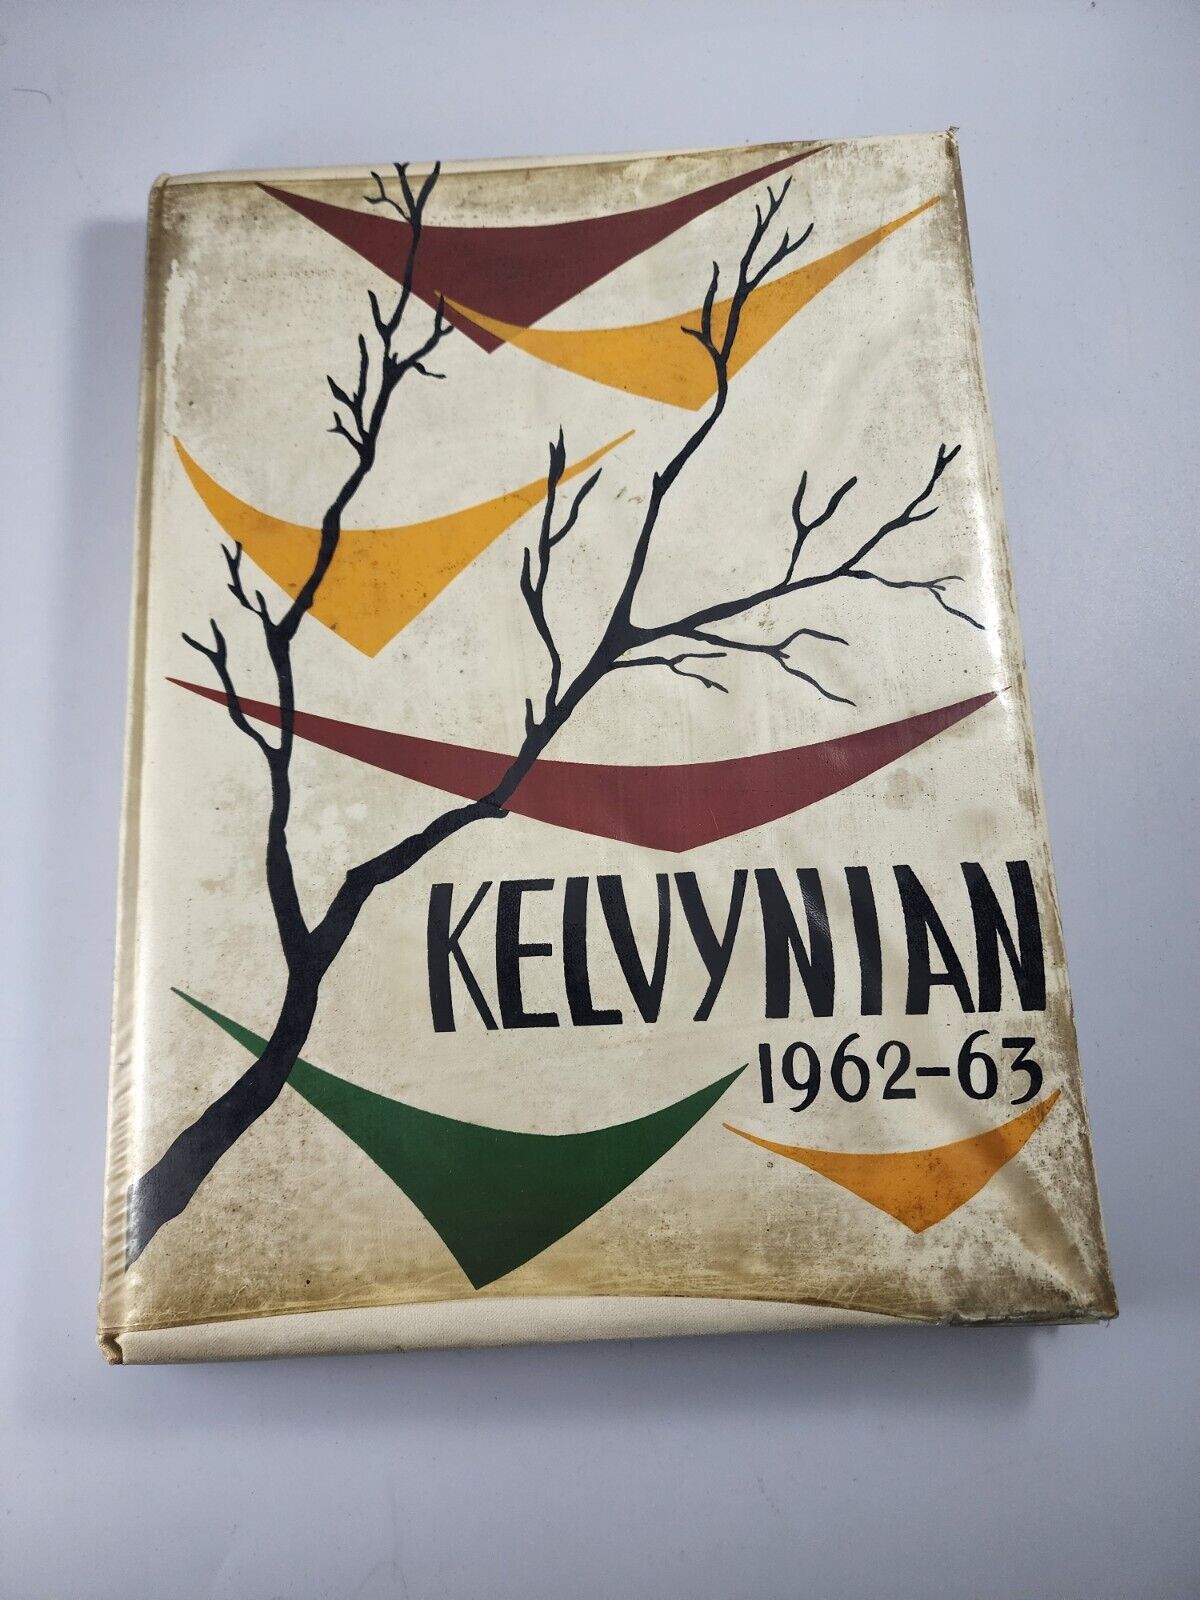 1962 - 1963 Kelvyn Park High School Yearbook Kelvynian Chicago IL Hermosa